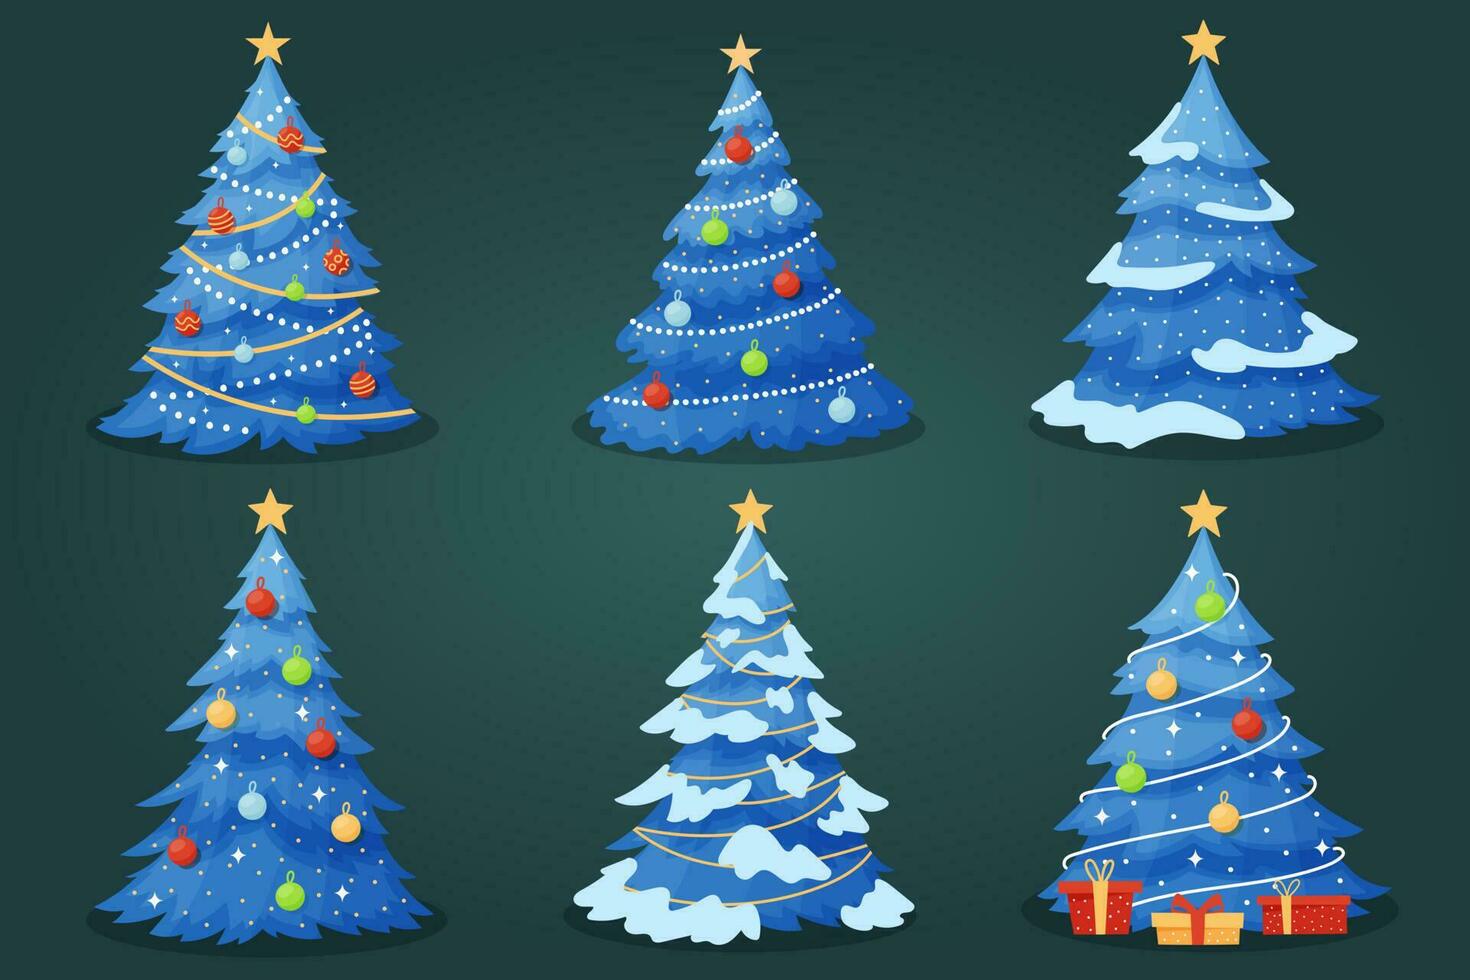 conjunto do azul Natal árvores, com neve vetor